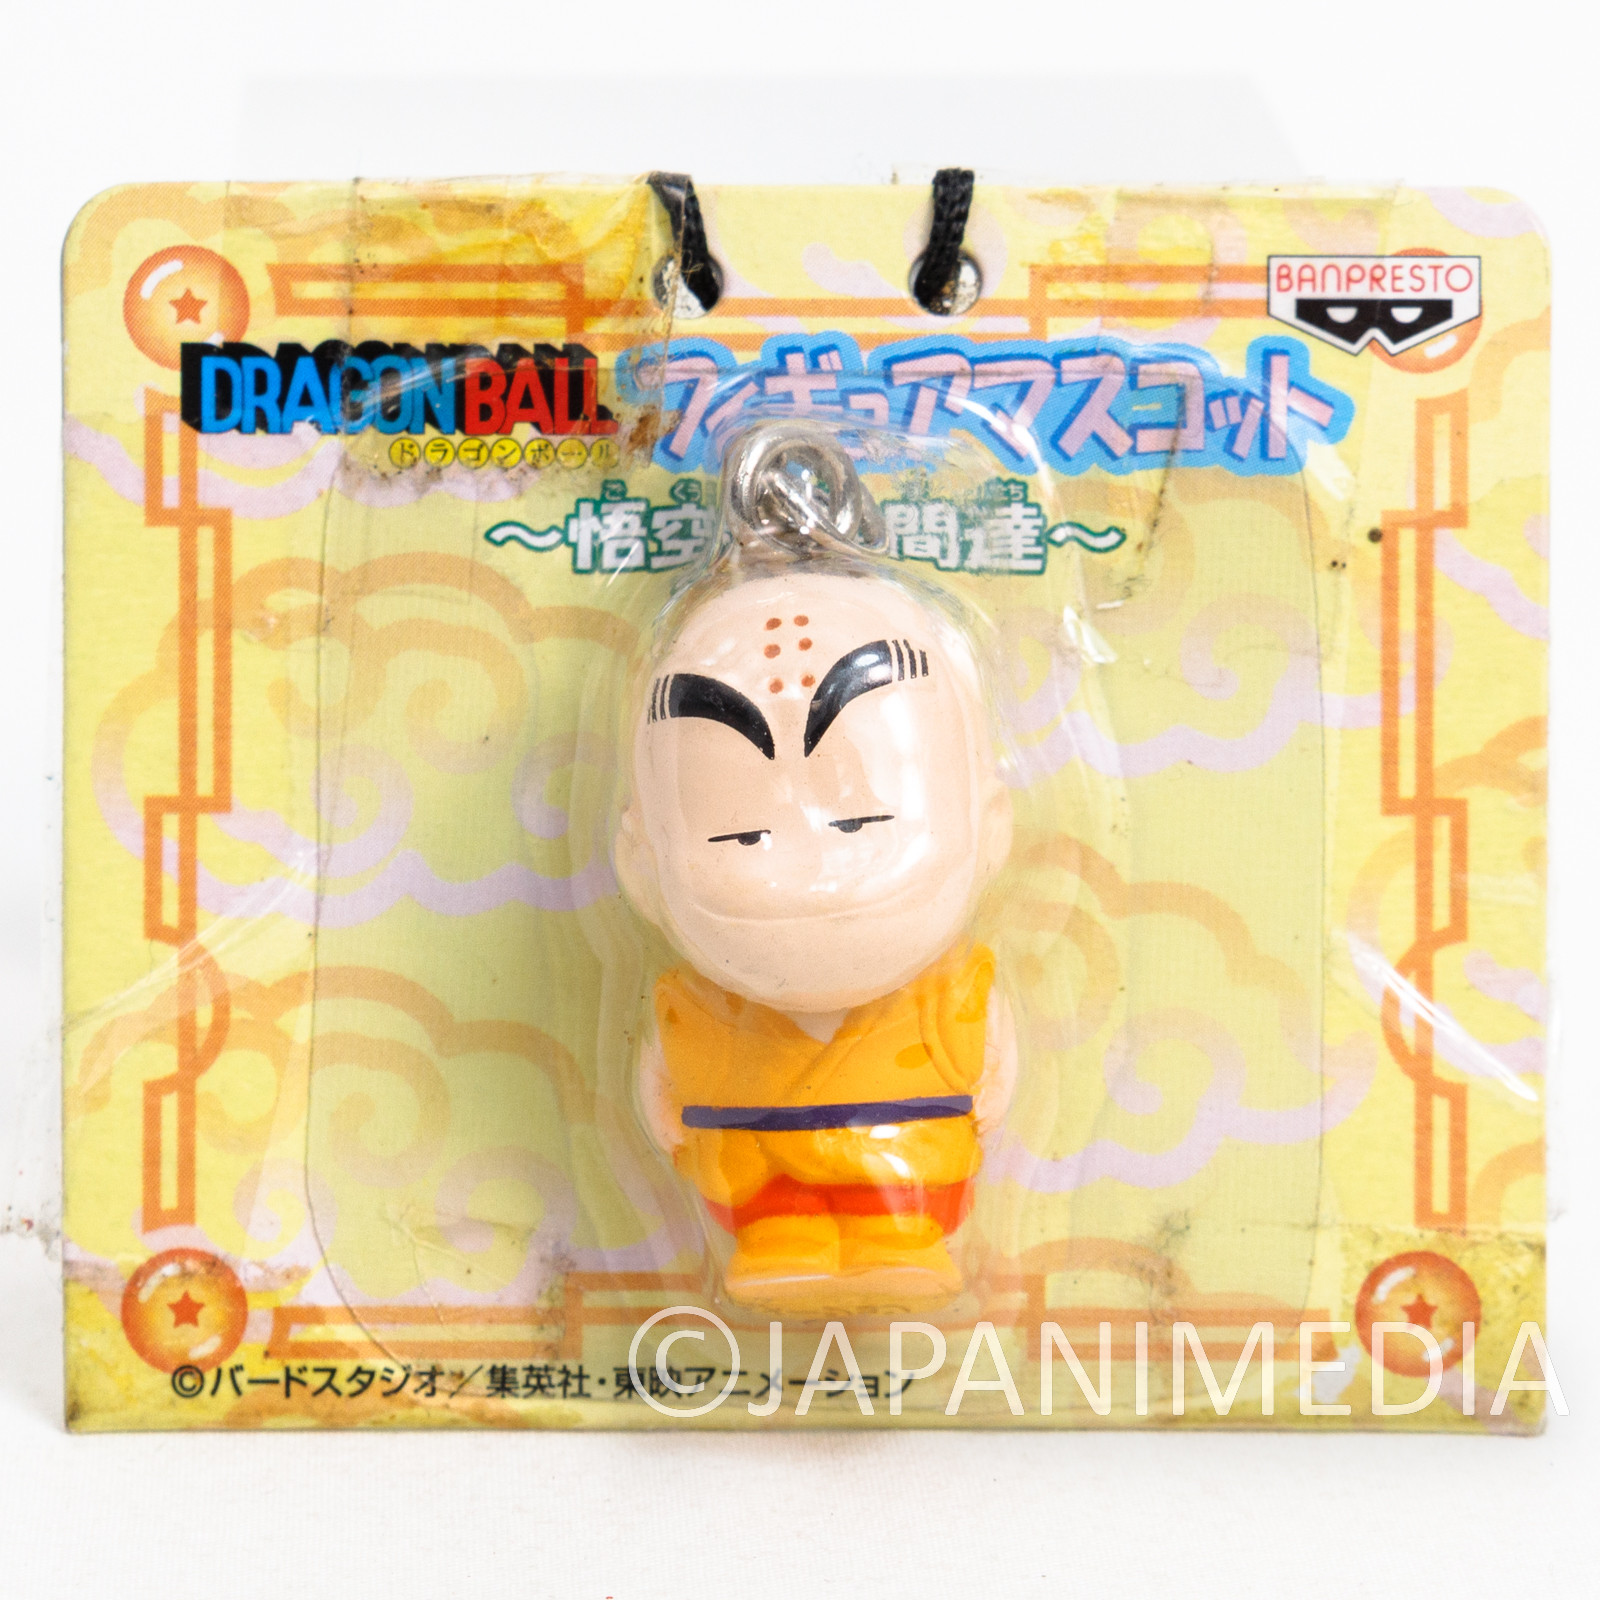 RARE! Dragon Ball Krillin Mini Mascot Figure JAPAN ANIME MANGA